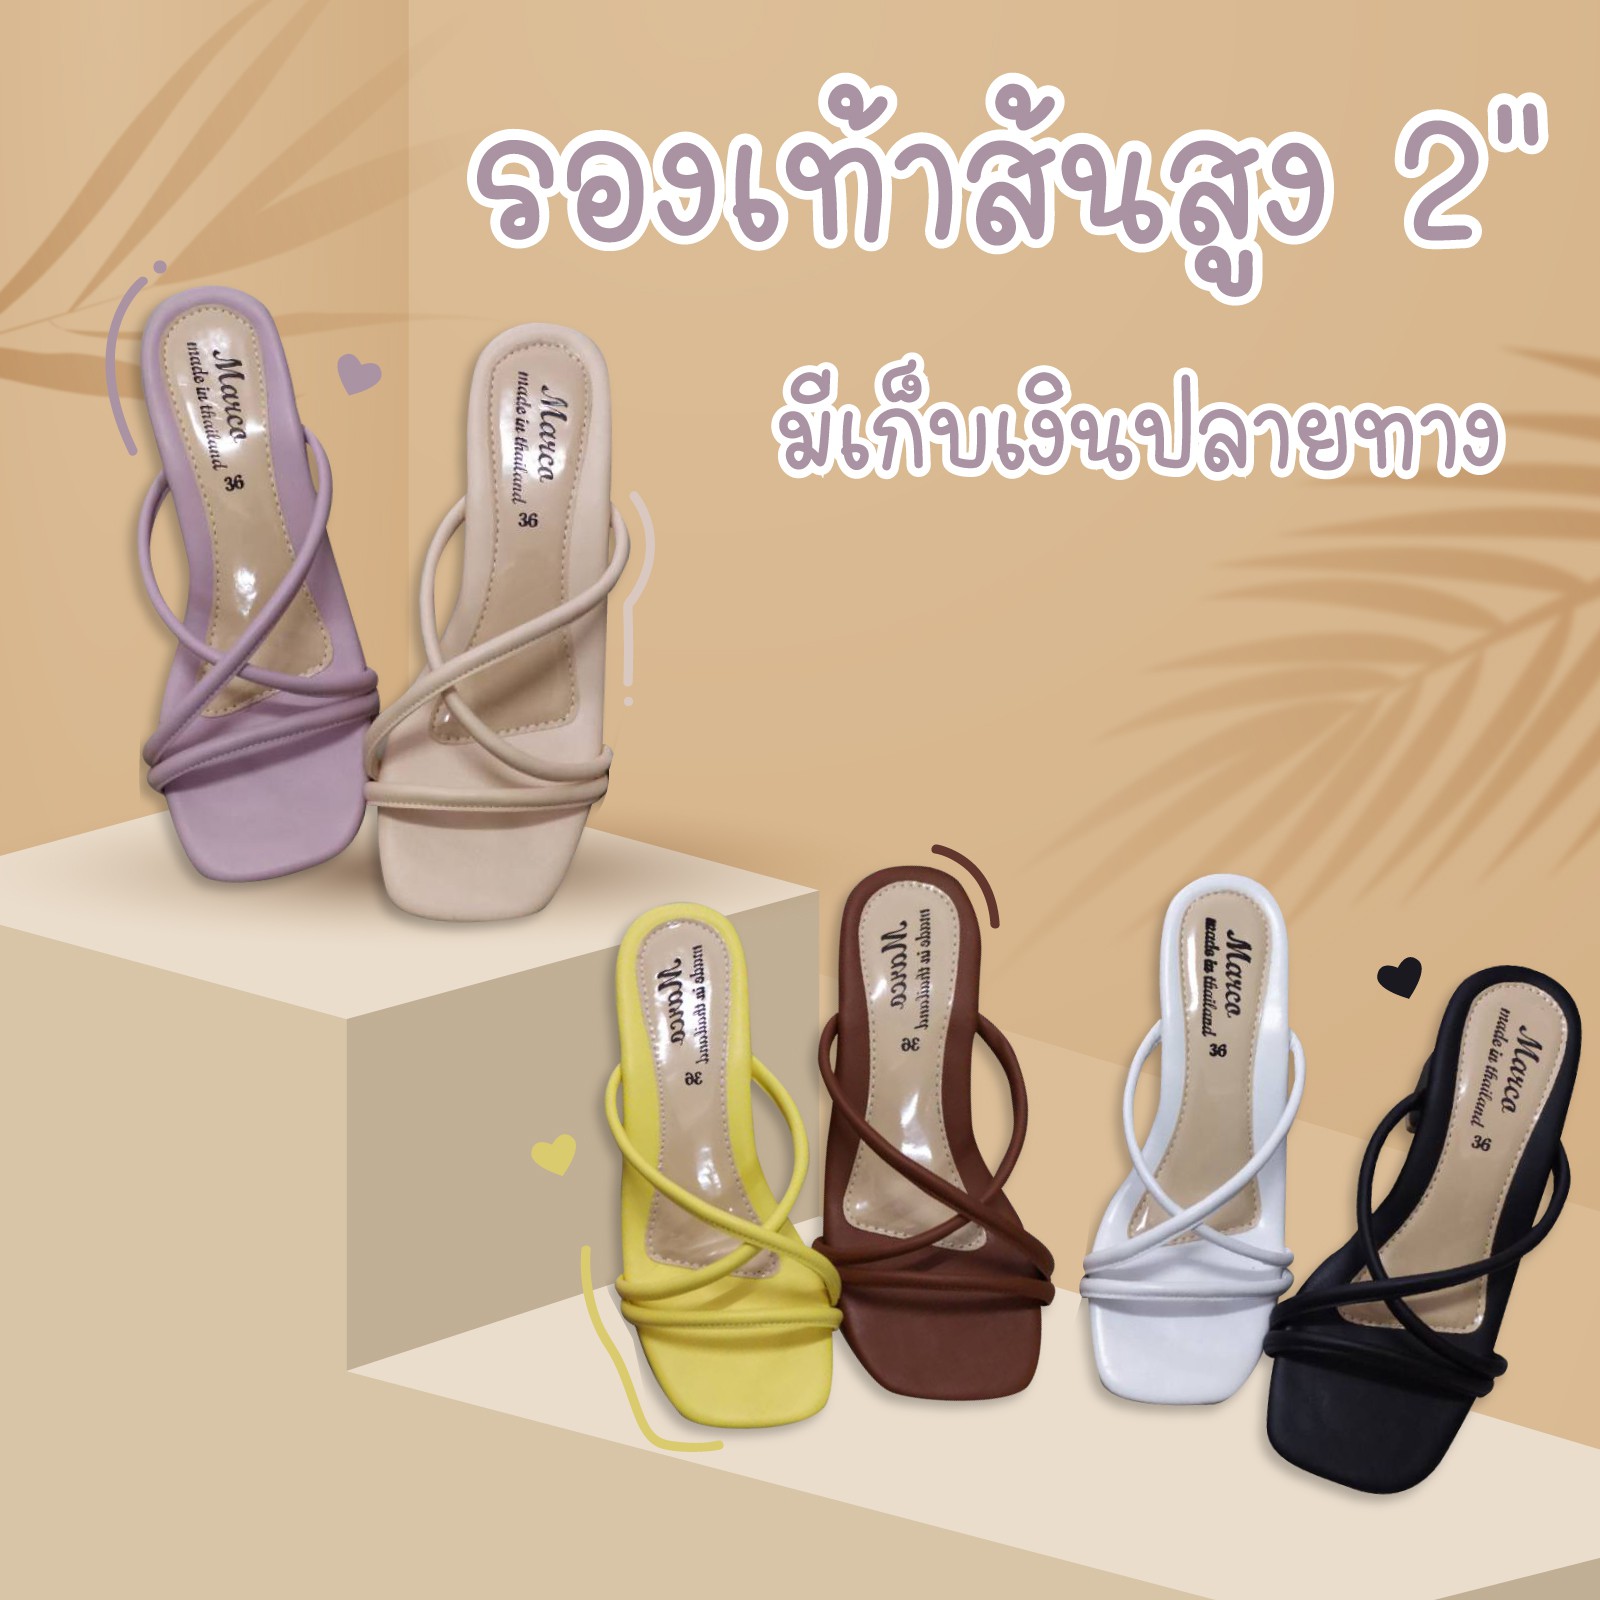 🌟New item🌟 รองเท้าส้นสูงผู้หญิงแบรนด์ ᗰᗩᖇᑕO รุ่น  A1030 ส้นสูง รุ่นใหม่ล่าสุด  วัสดุหนังนิ่ม ใส่สบาย งานไทย มีกล่องทุกคู่